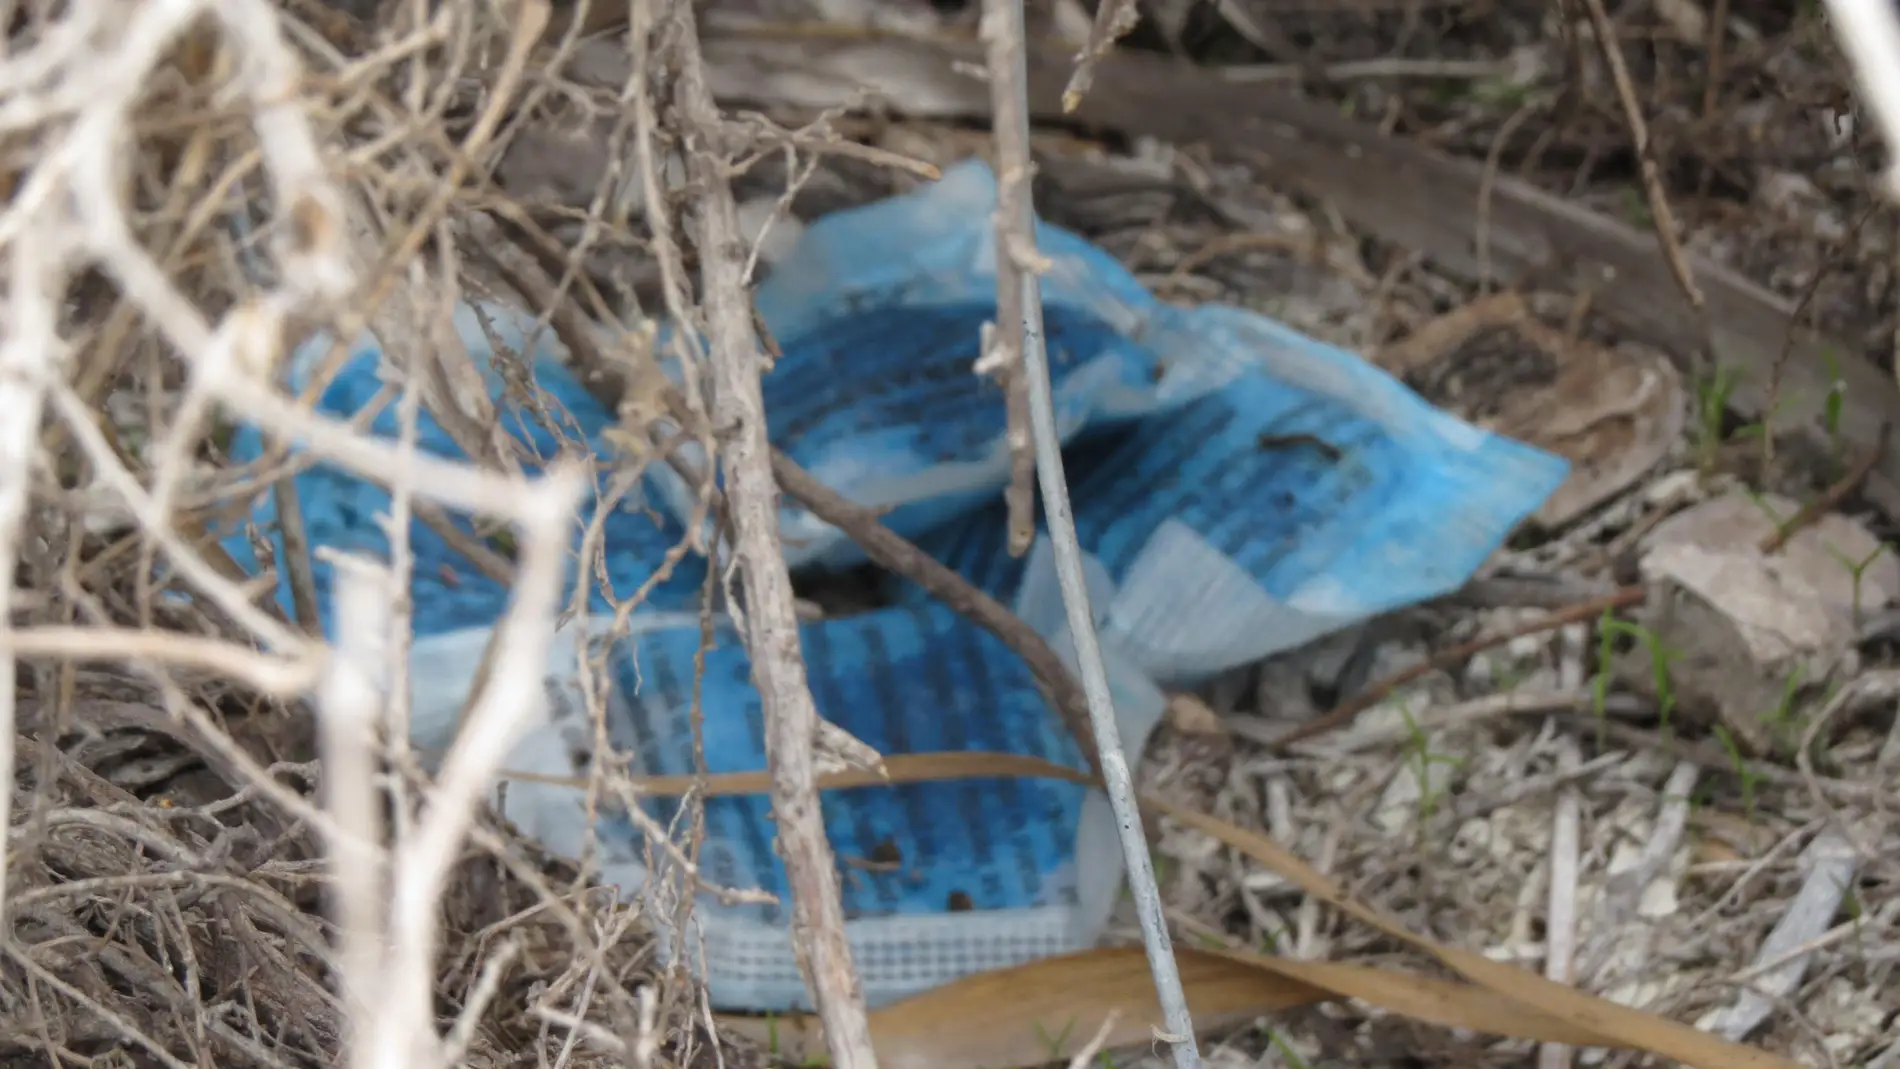 Una de las bolsas con restos de raticida encontradas